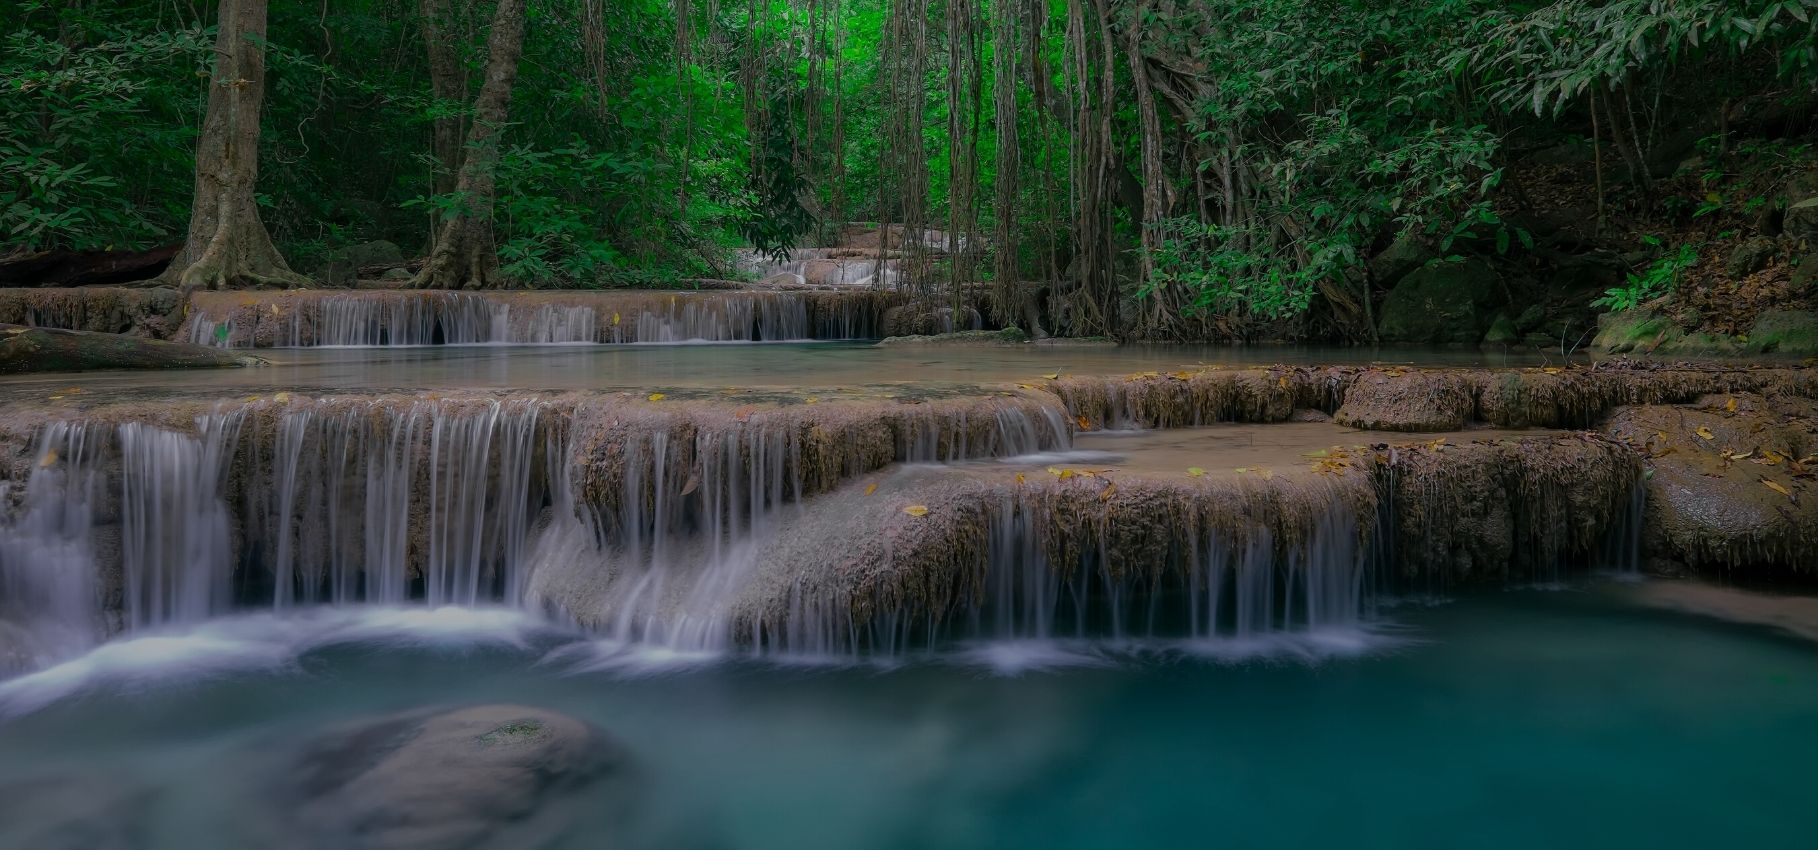 Visiting Erawan Waterfall and National Park, Thailand